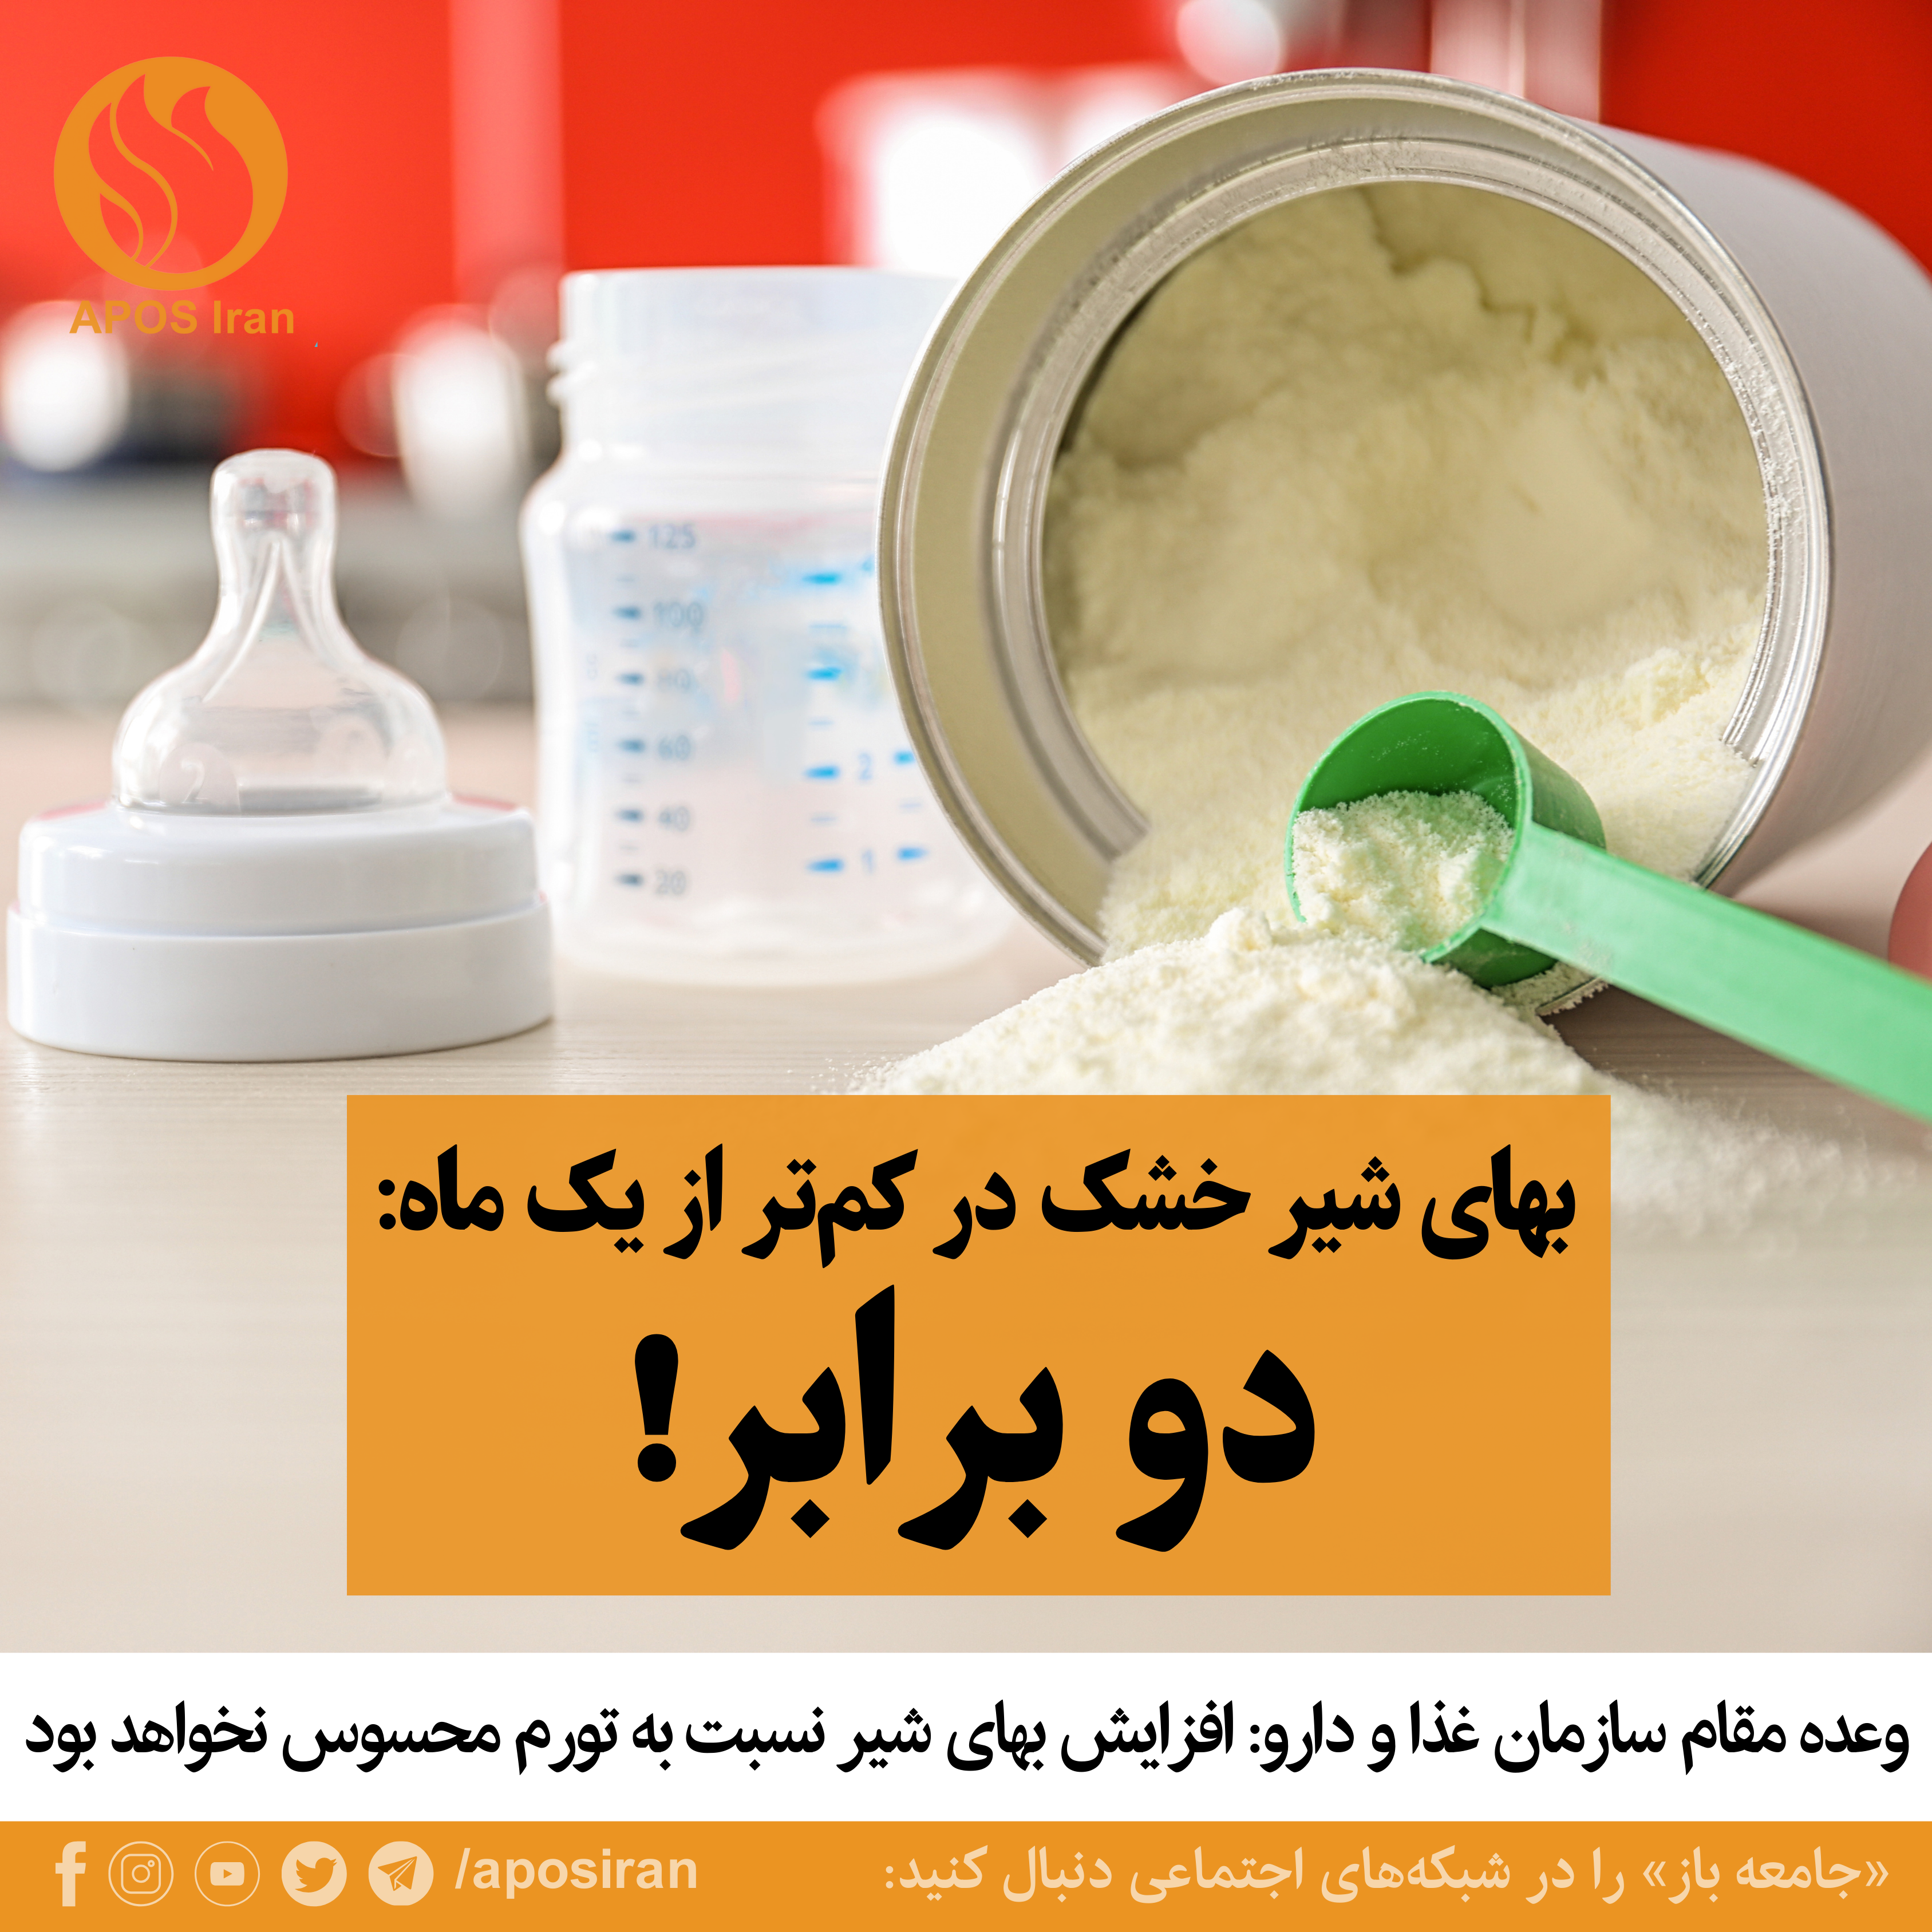 کمیابی شیر خشک با دور جدیدی از در ایران آغاز شده و به دنبال آن بهای شیر خشک در کم‌تر از یک ماه به دو برابر رسیده است!